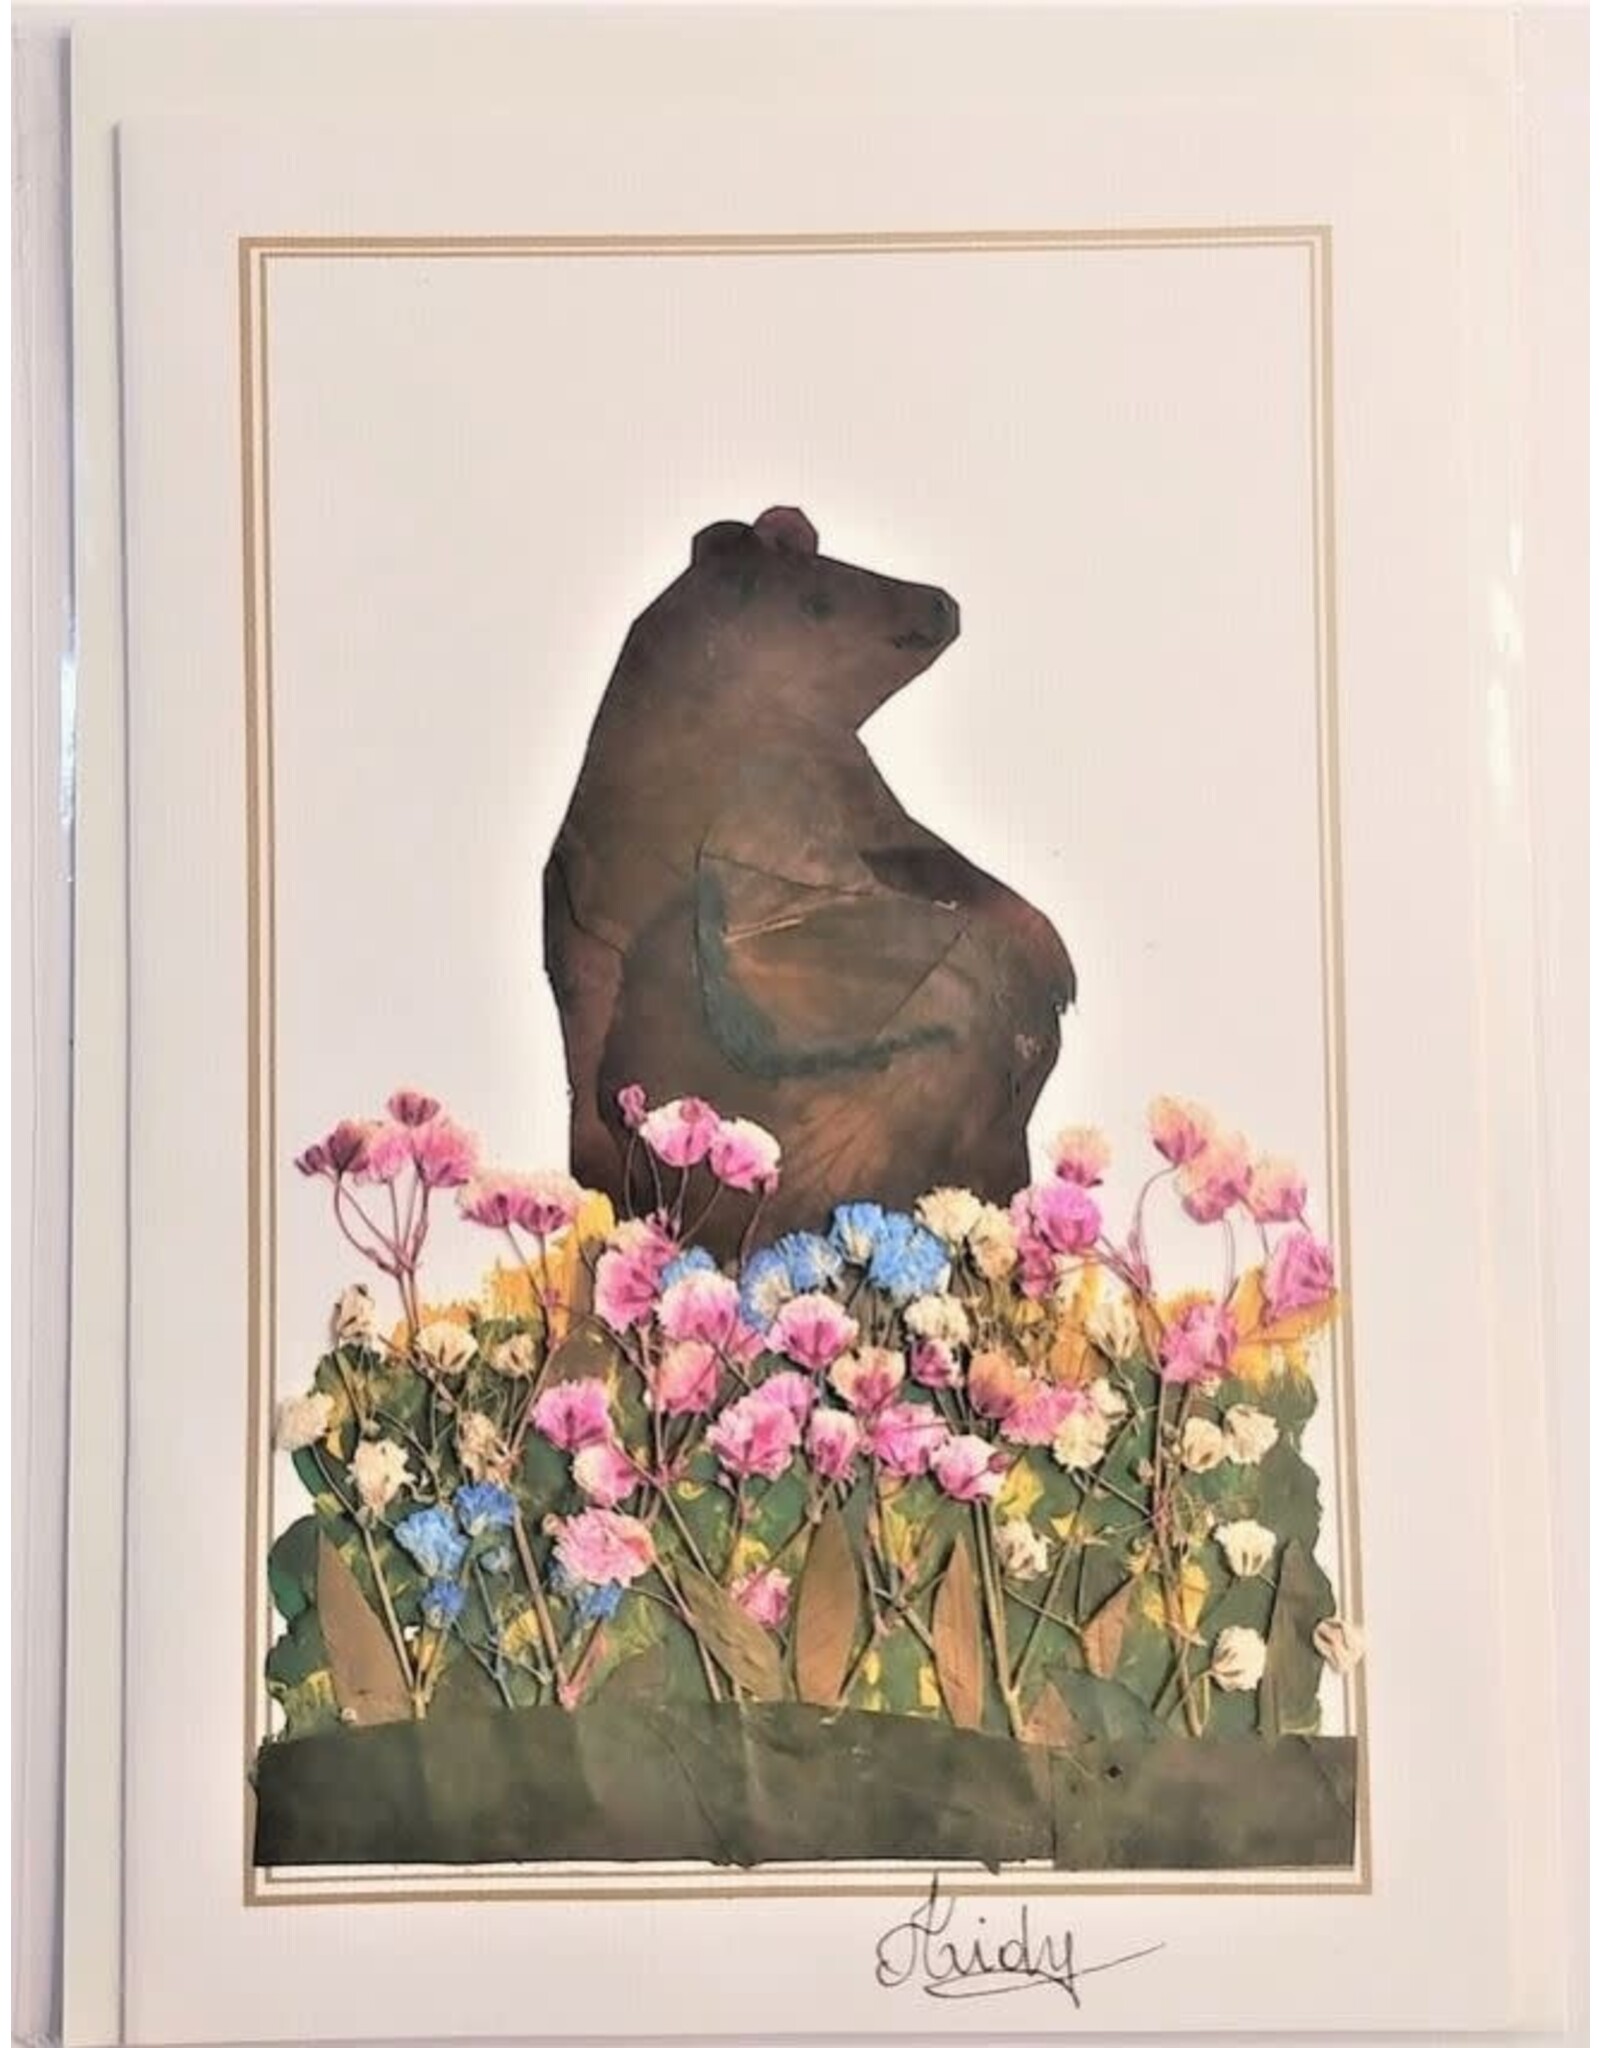 Ecuador Pressed Flower Card, Ecuador